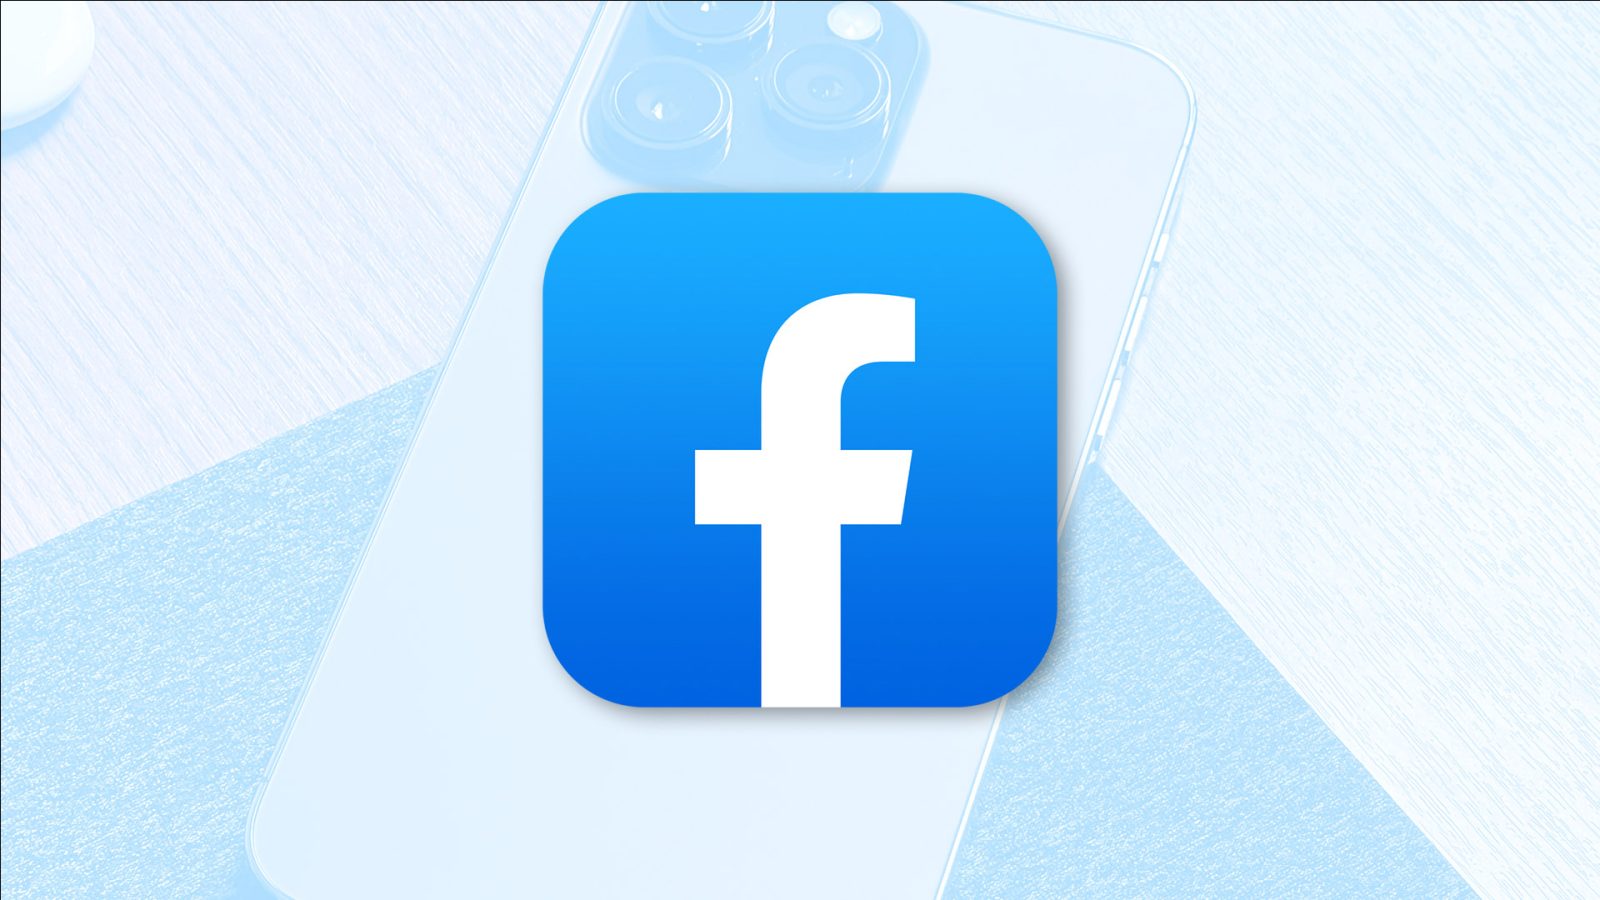 متا می خواهد فیس بوک را حداقل در اتحادیه اروپا جایگزین اپ استور کند